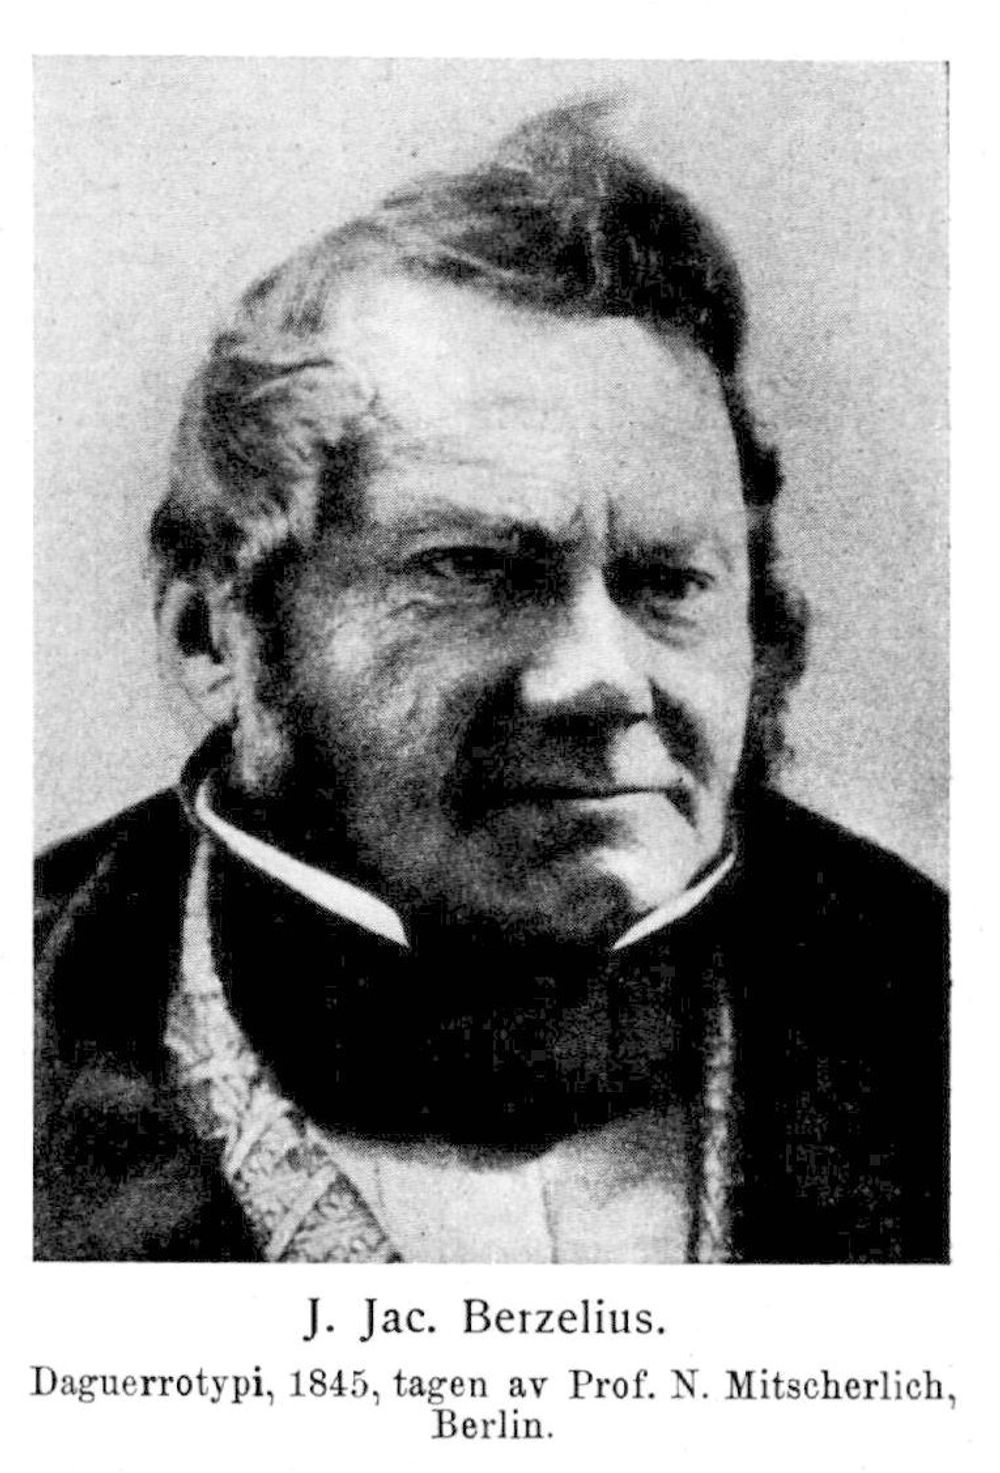 Jöns Jakob Berzelius identifiserte som førstemann silisium som grunnstoff. Det var også Berzelius som ga grunnstoffet navnet Silisium. Daguerrotopi tatt i 1845 av professor M. Mitscherlich.  Kilde: Svensk biografisk leksikon